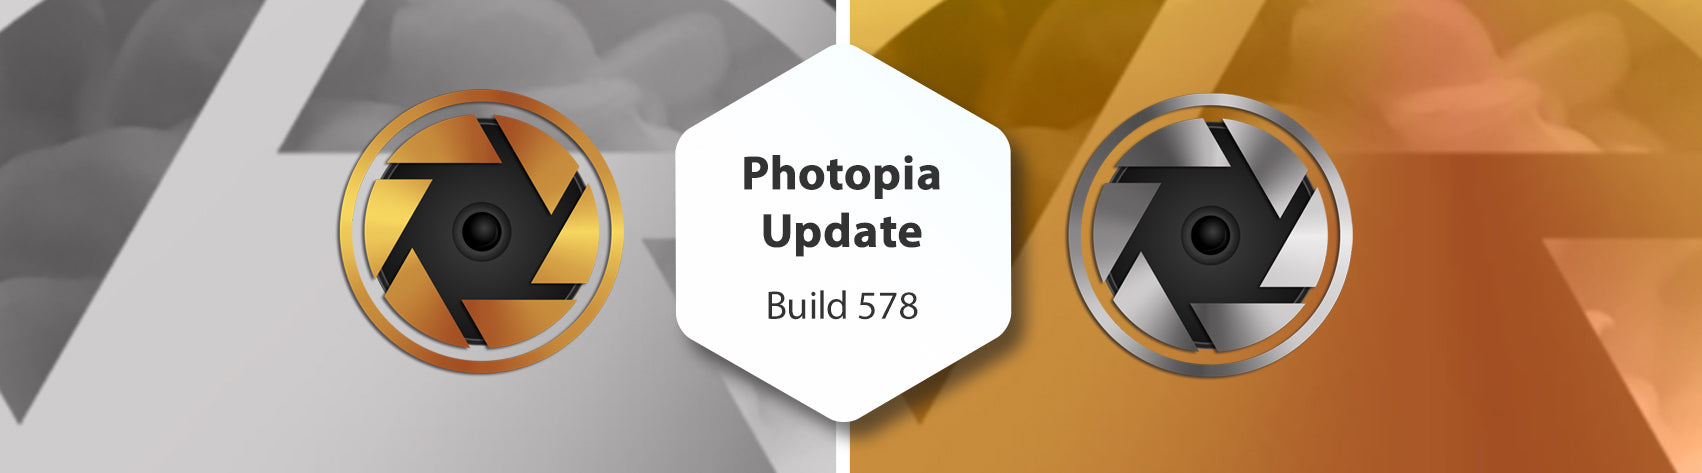 Photopia Update - Build 578 with Wizard Tutorials